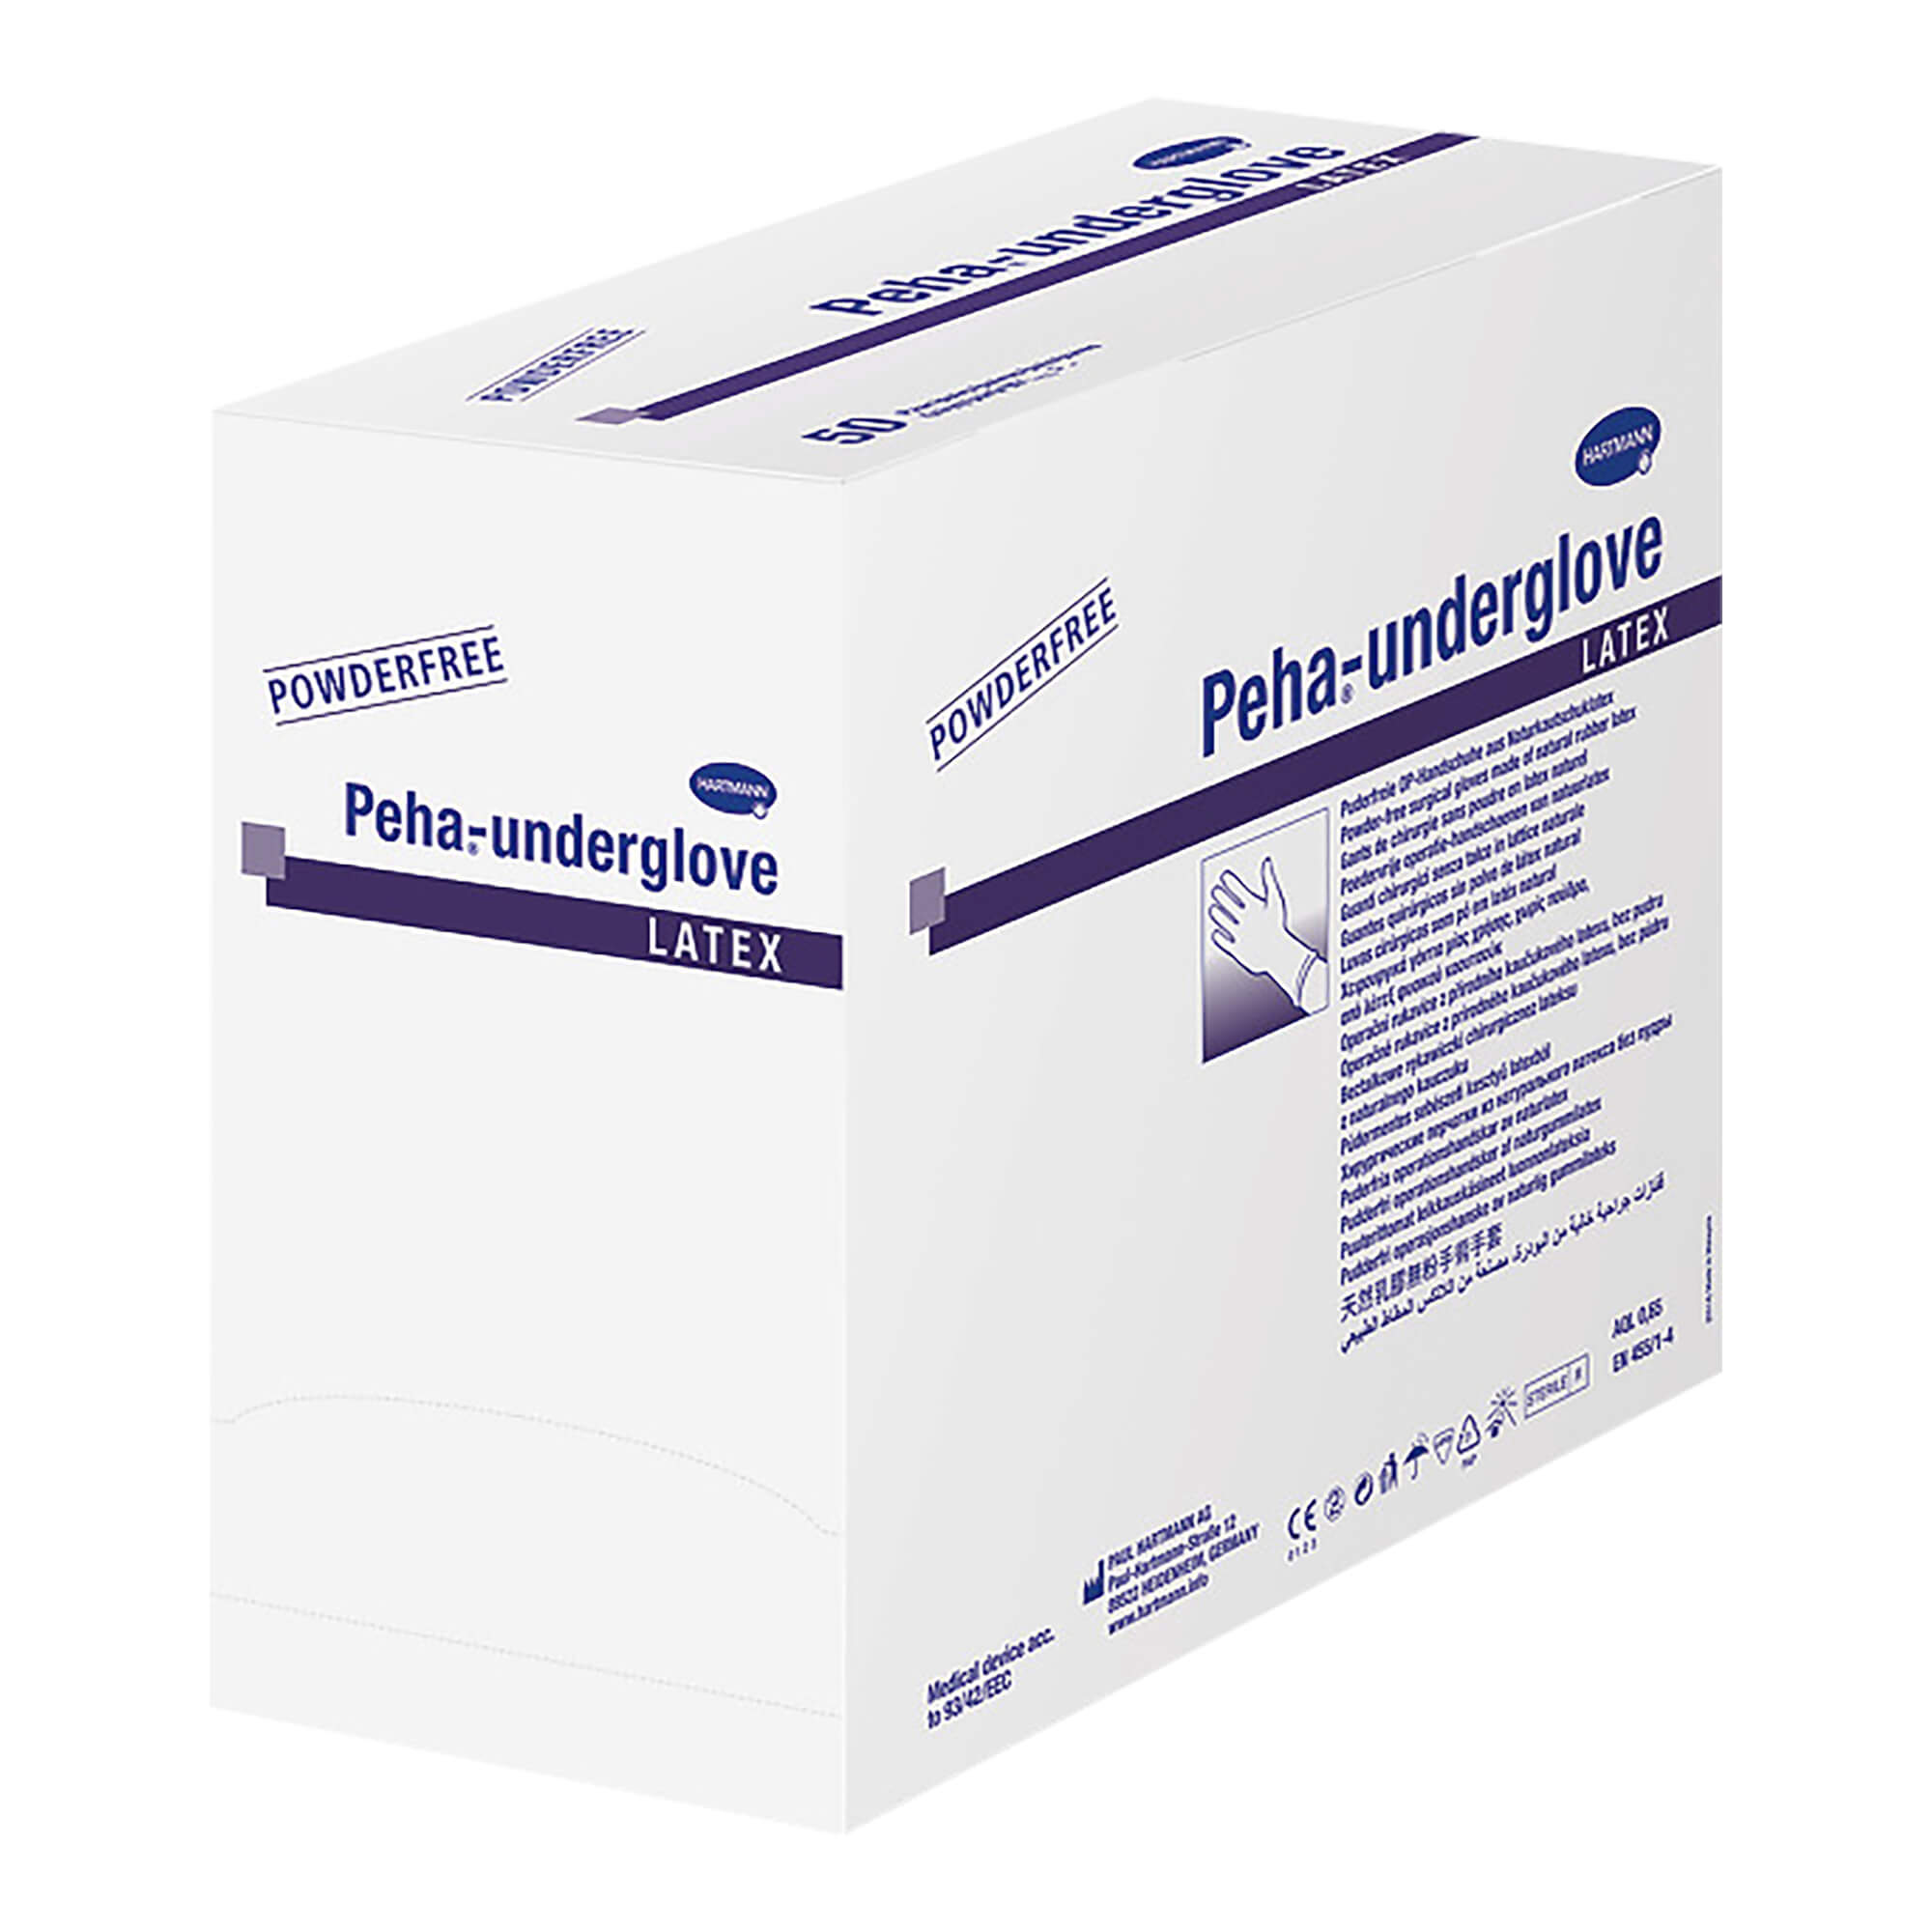 Peha-underglove latex ist ein Medizinprodukt nach EN 455 und Persönliche Schutzausrüstung nach EN 374.